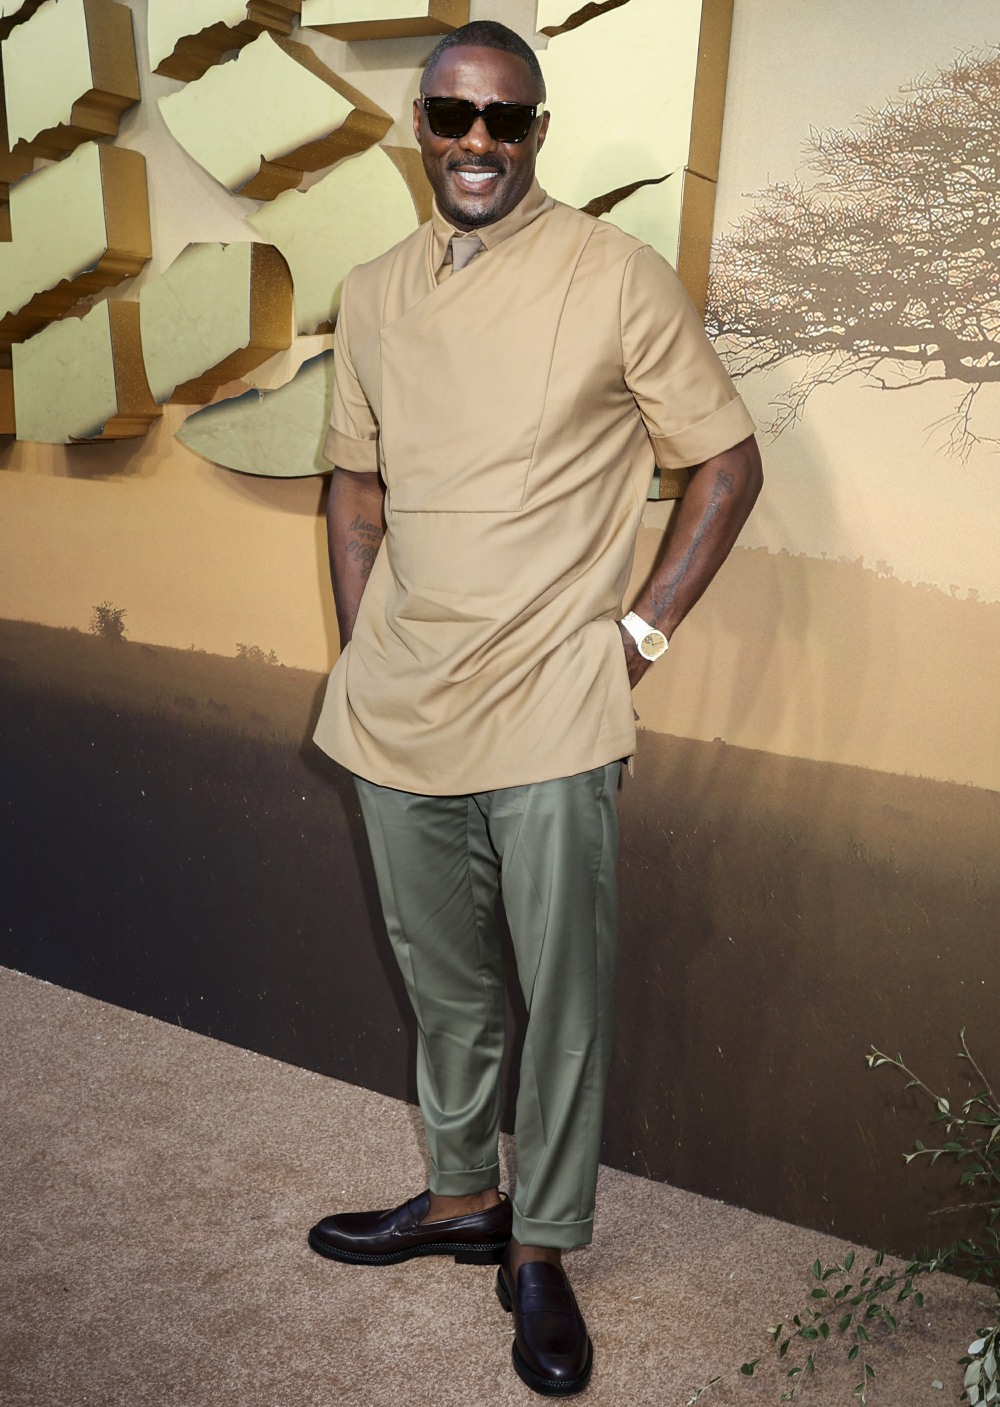 kaltak | "TGIF, işte Idris Elba'nın Hackney'de güzel görünen bazı fotoğrafları" linkleri